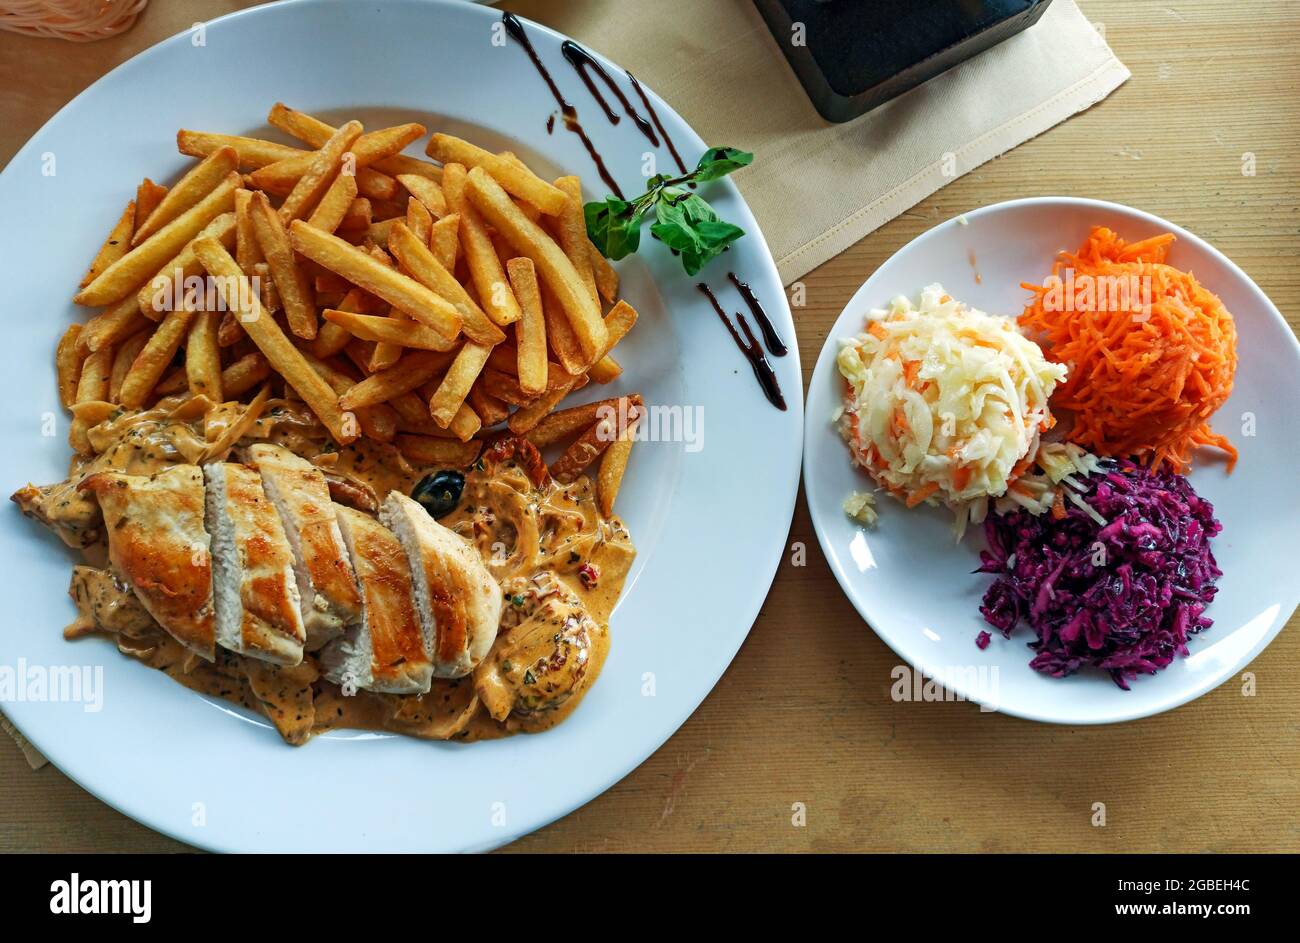 Un filet de poulet grillé avec sauce aux champignons et des frites avec  surowki traduit en salade mixte sur une assiette blanche. Cuisine  traditionnelle polonaise consis Photo Stock - Alamy